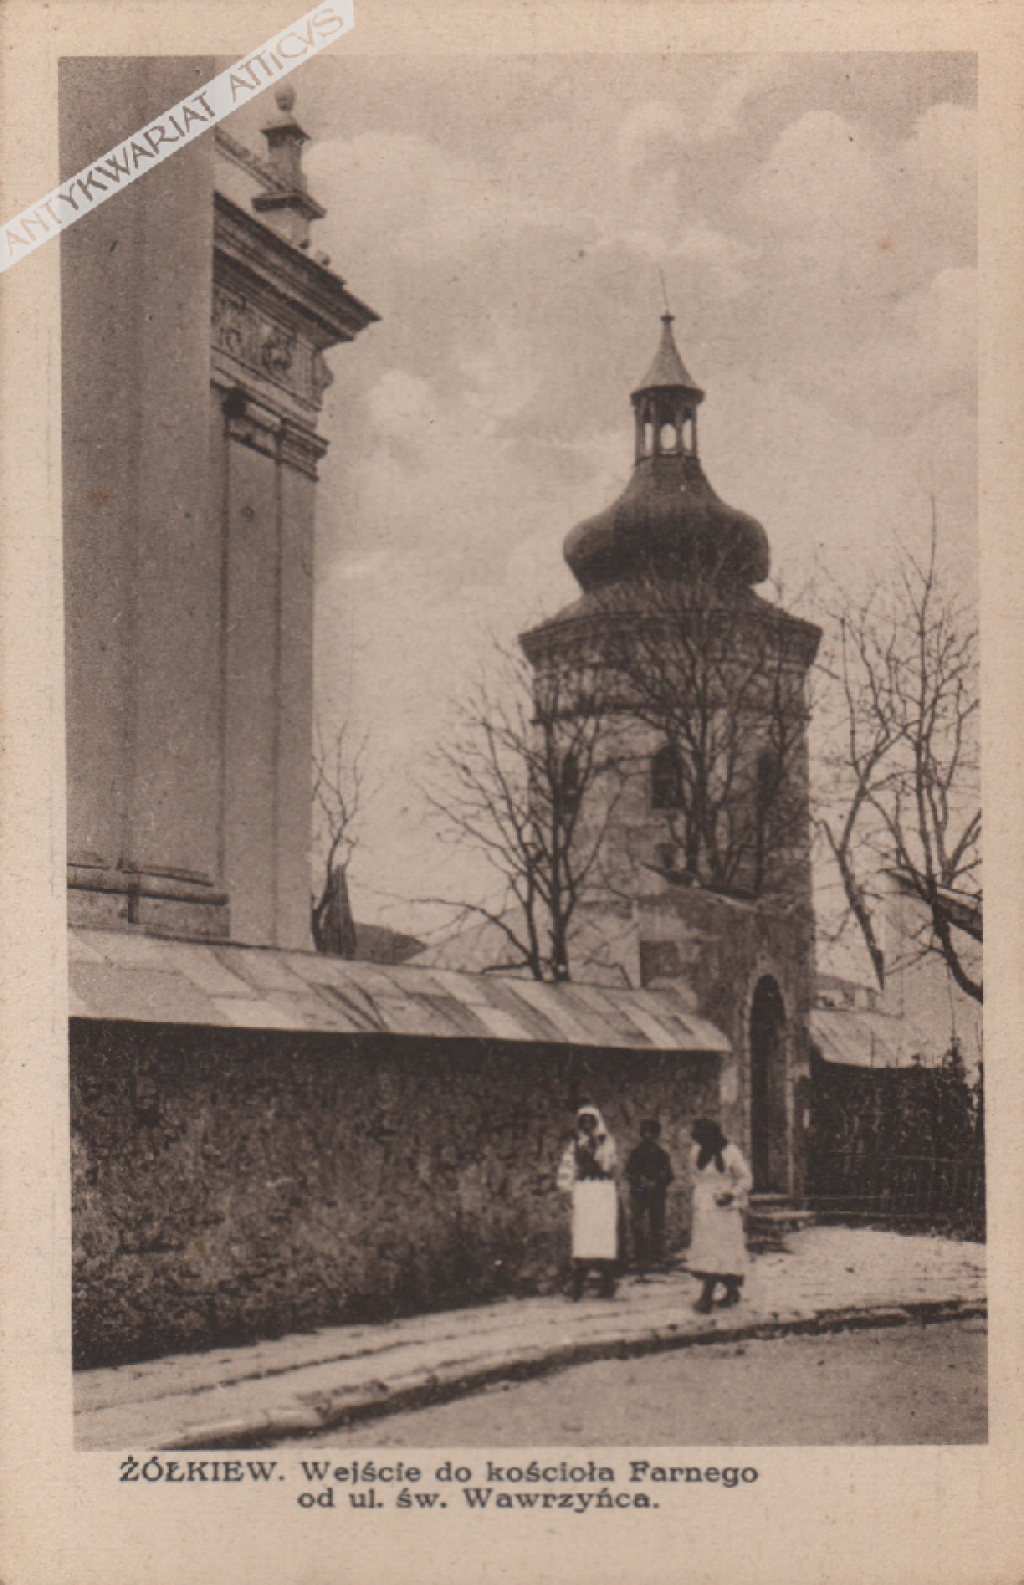 [pocztówka, lata 1920-te] Żółkiew. Wejście do kościoła Farnego od ul. św. Wawrzyńca